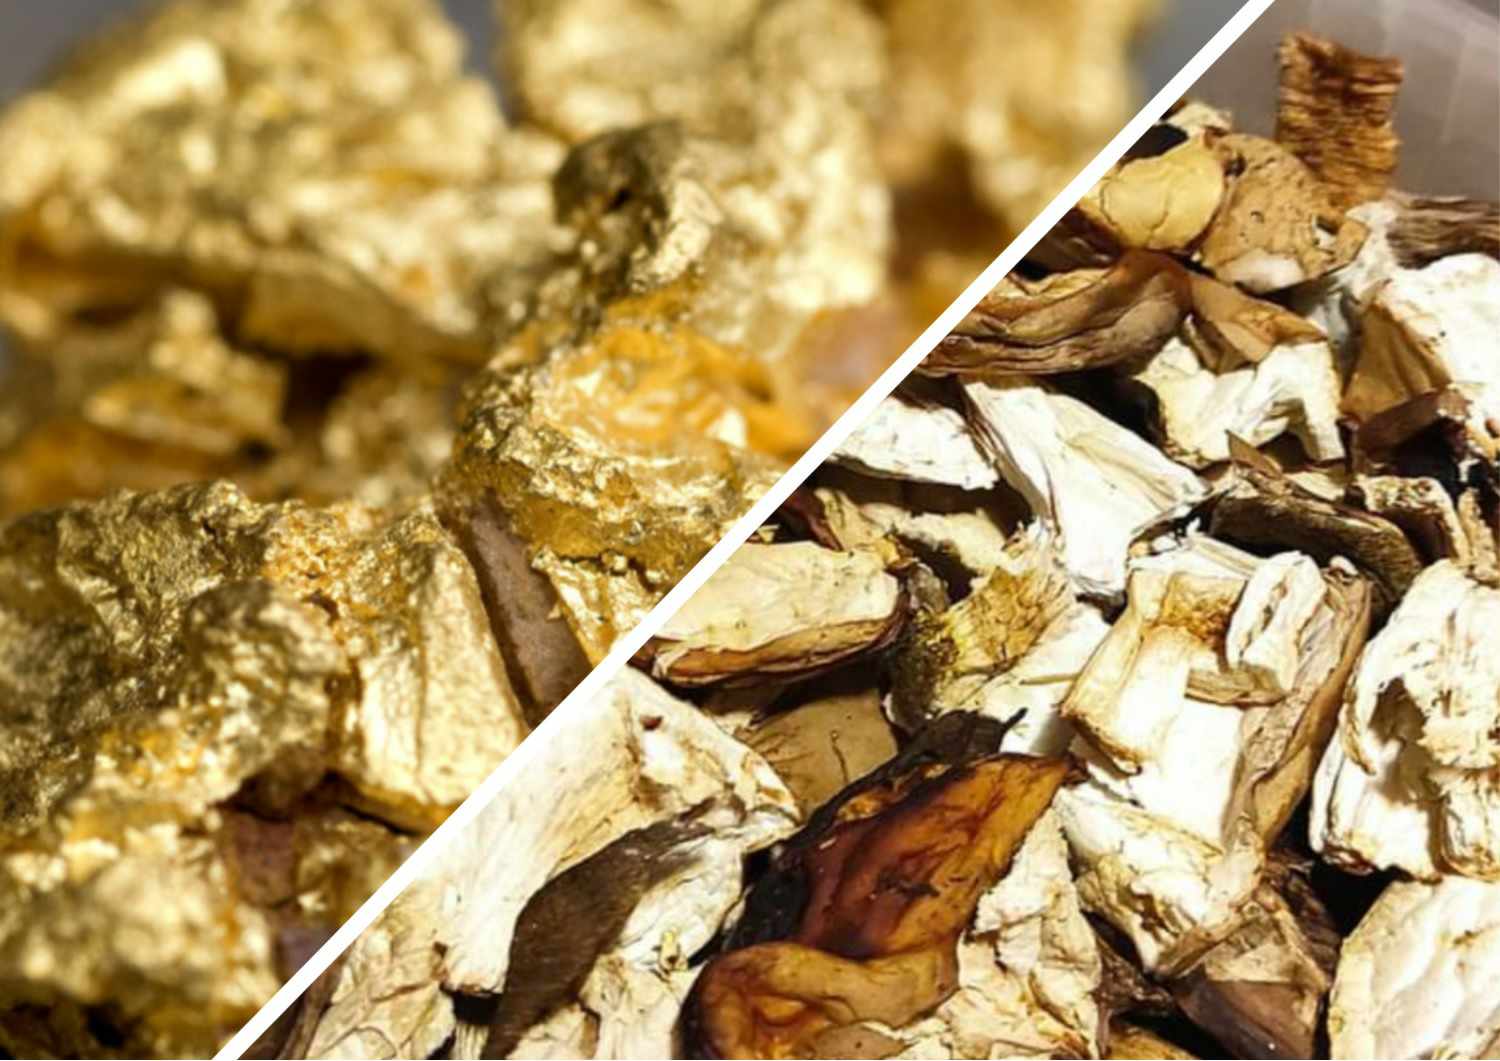 На Закарпатті у попиті "золотий гриб": в яку суму оцінюють кілограм "білого золота" в сушеному вигляді? (ФОТО)